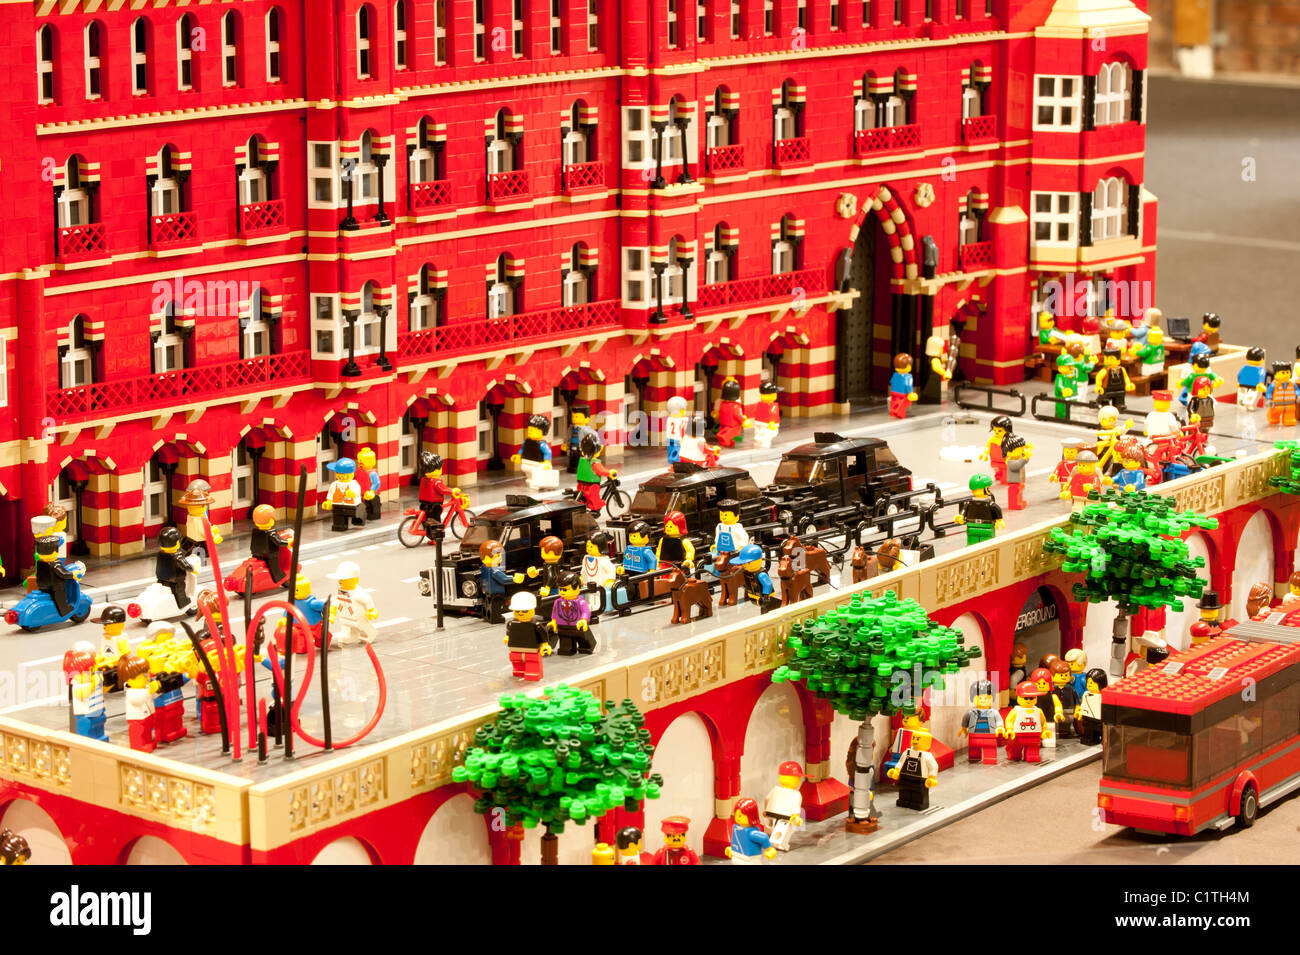 Eine Detailansicht eines Lego-Modells von St Pancras station Stockfoto